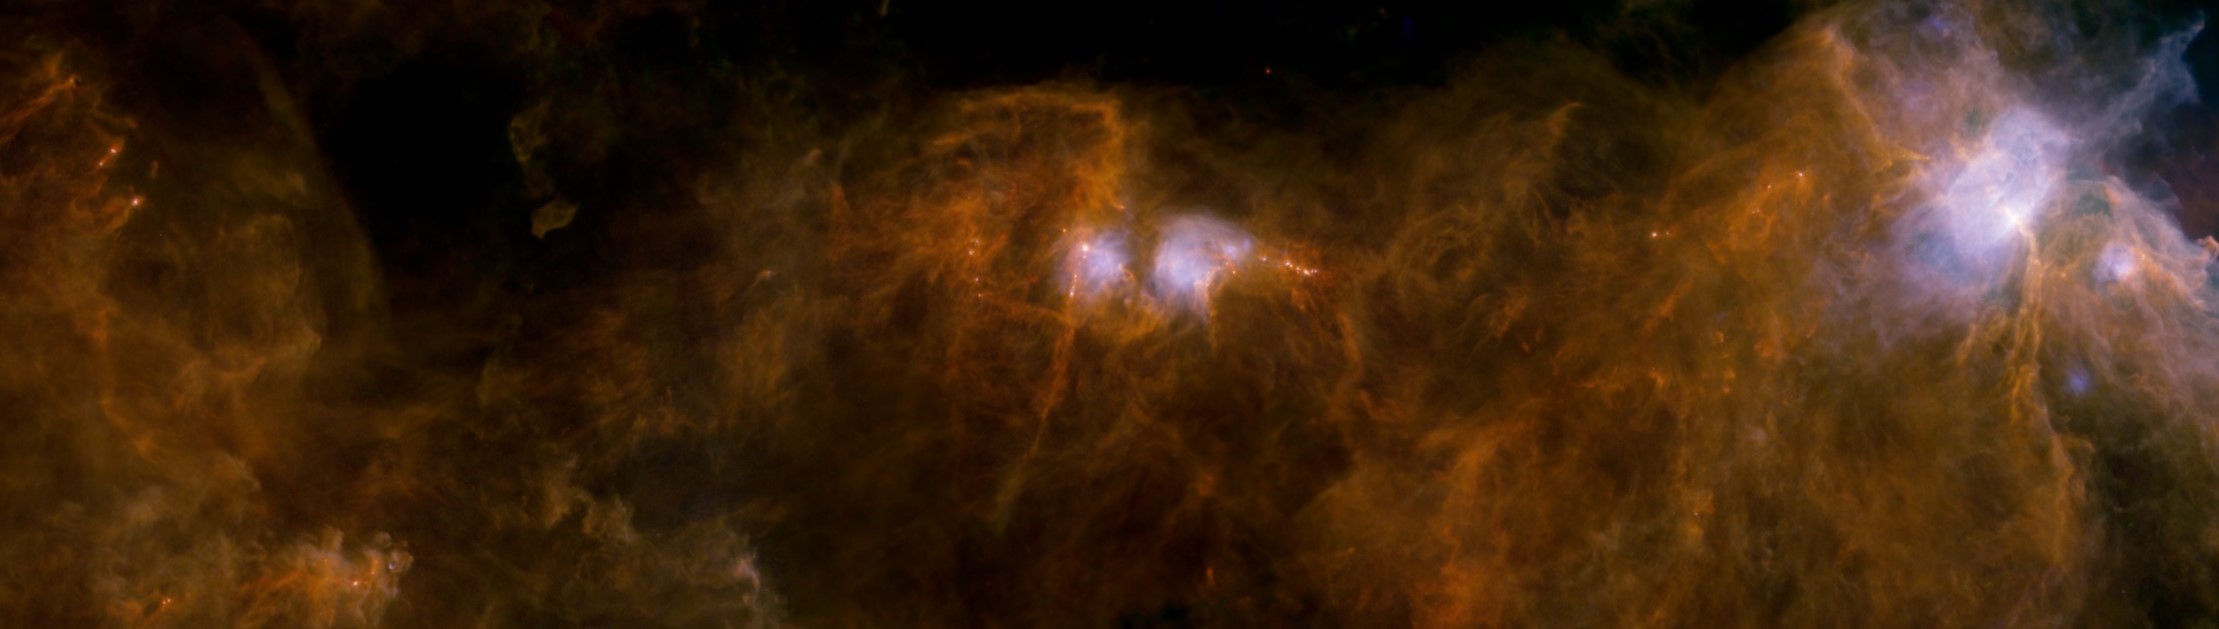 Изображение молекулярных облаков в Орионе B, полученное космической обсерваторией им. Гершеля в дальнем ИК-диапазоне. Сети длинных тонких нитей, пронизывающих облака, сопровождаются яркими протозвездами. Credit: ESA